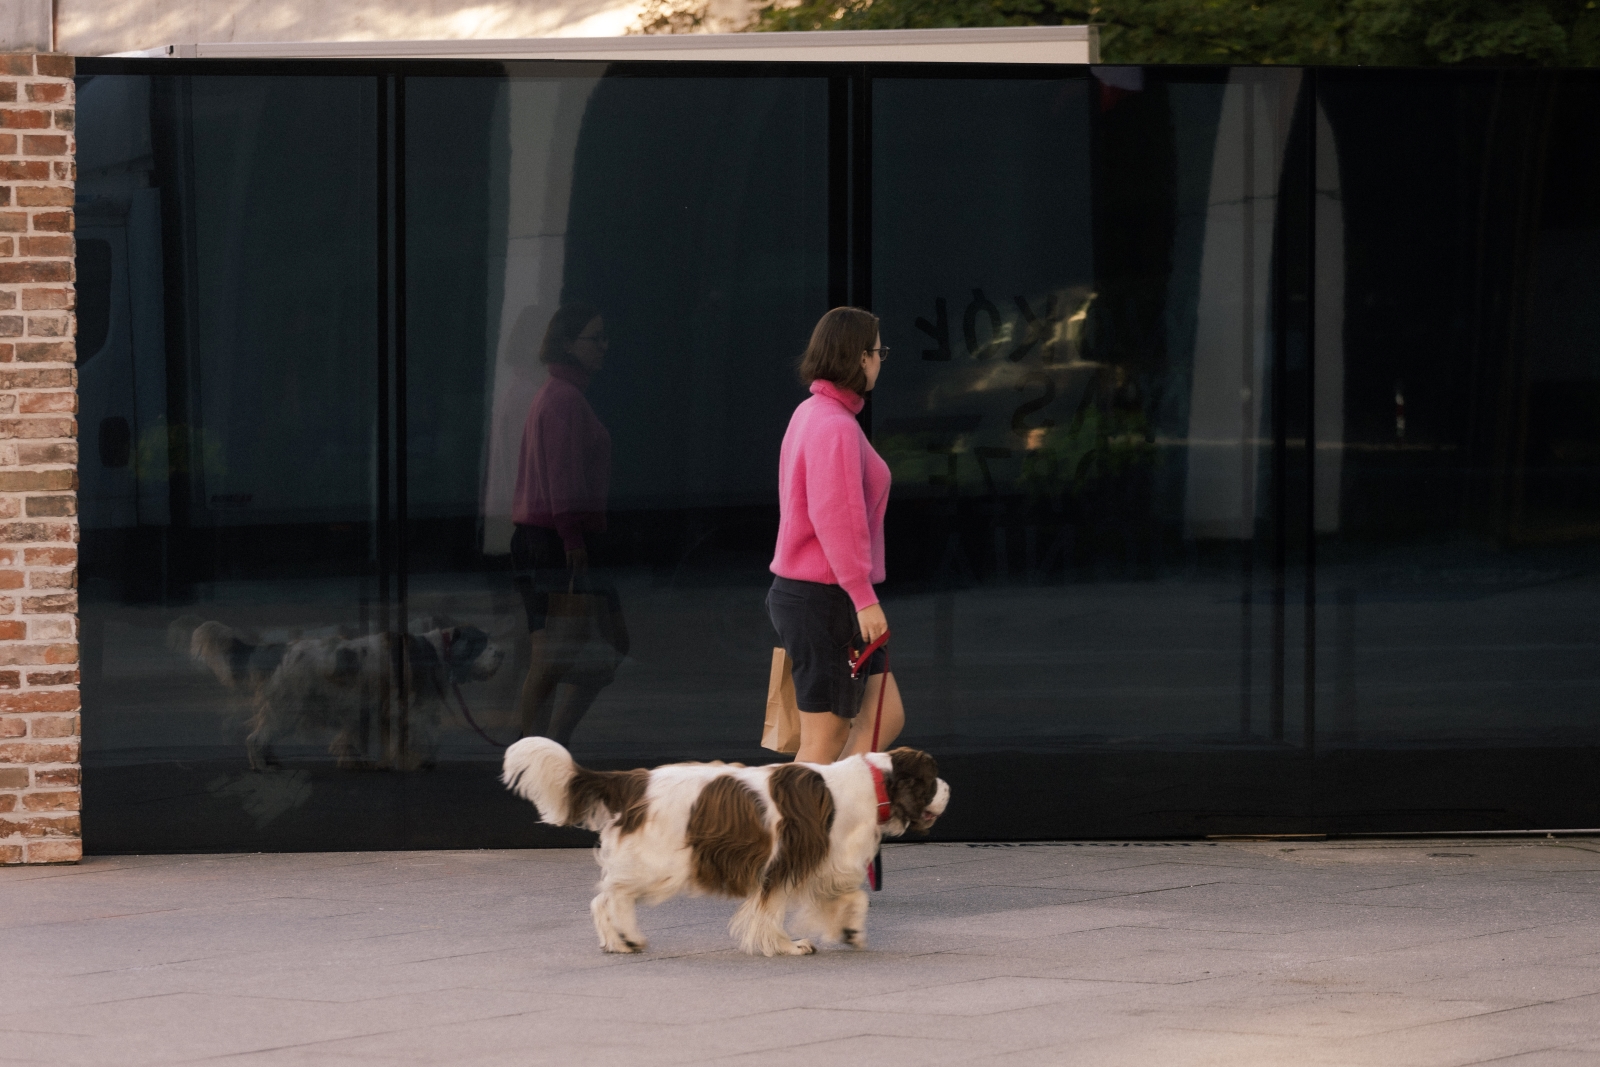 Kobieta spaceruje z psem przy instalacji "Dwie strony muru" Muzeum POLIN.